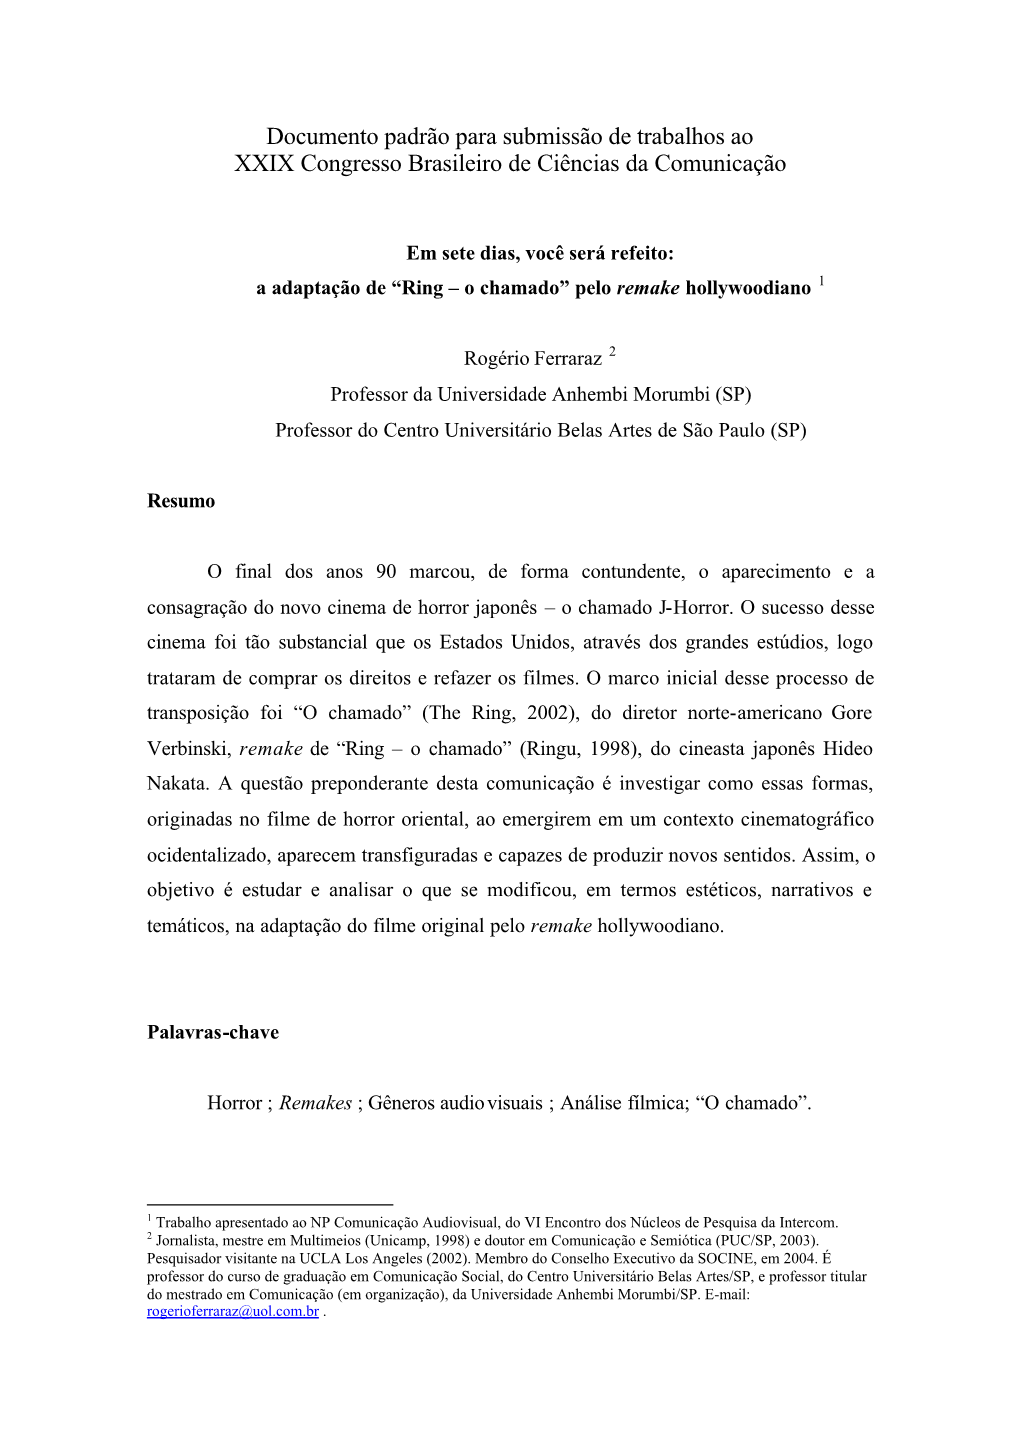 Documento Padrão Para Submissão De Trabalhos Ao XXIX Congresso Brasileiro De Ciências Da Comunicação